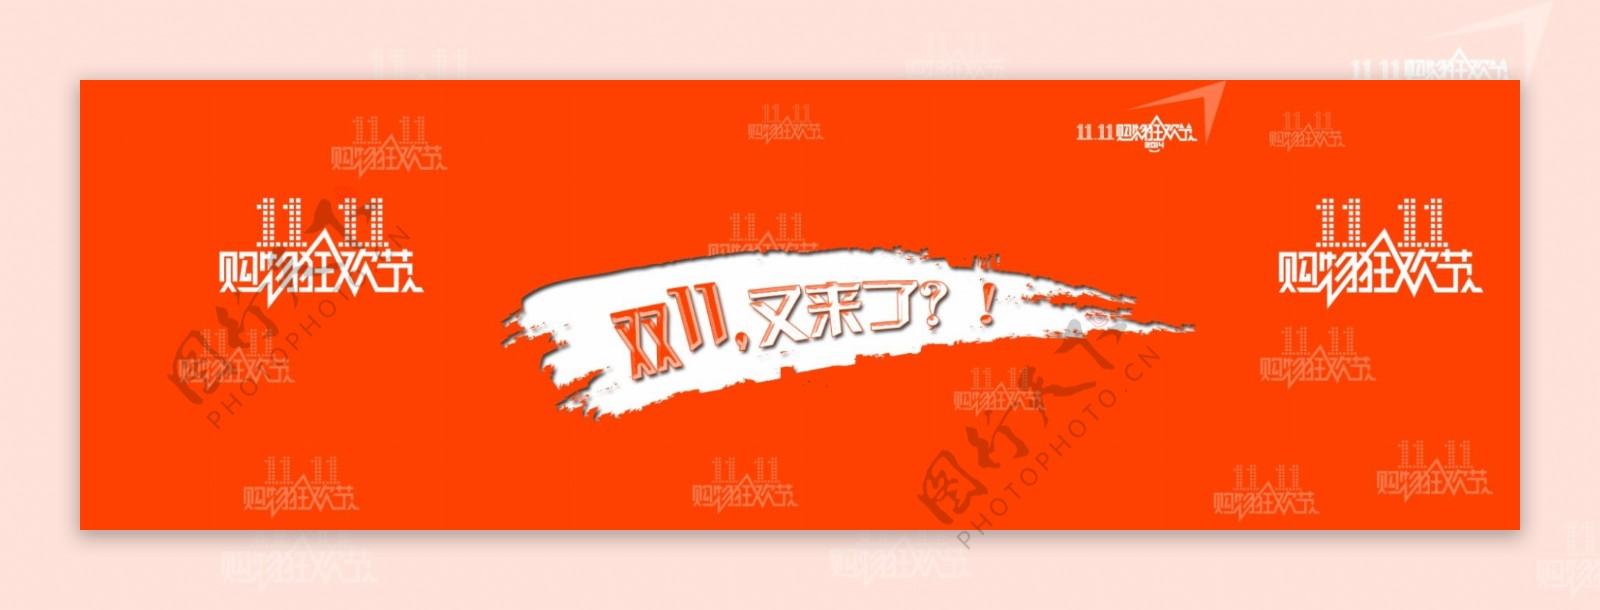 2014淘宝双11全屏海报